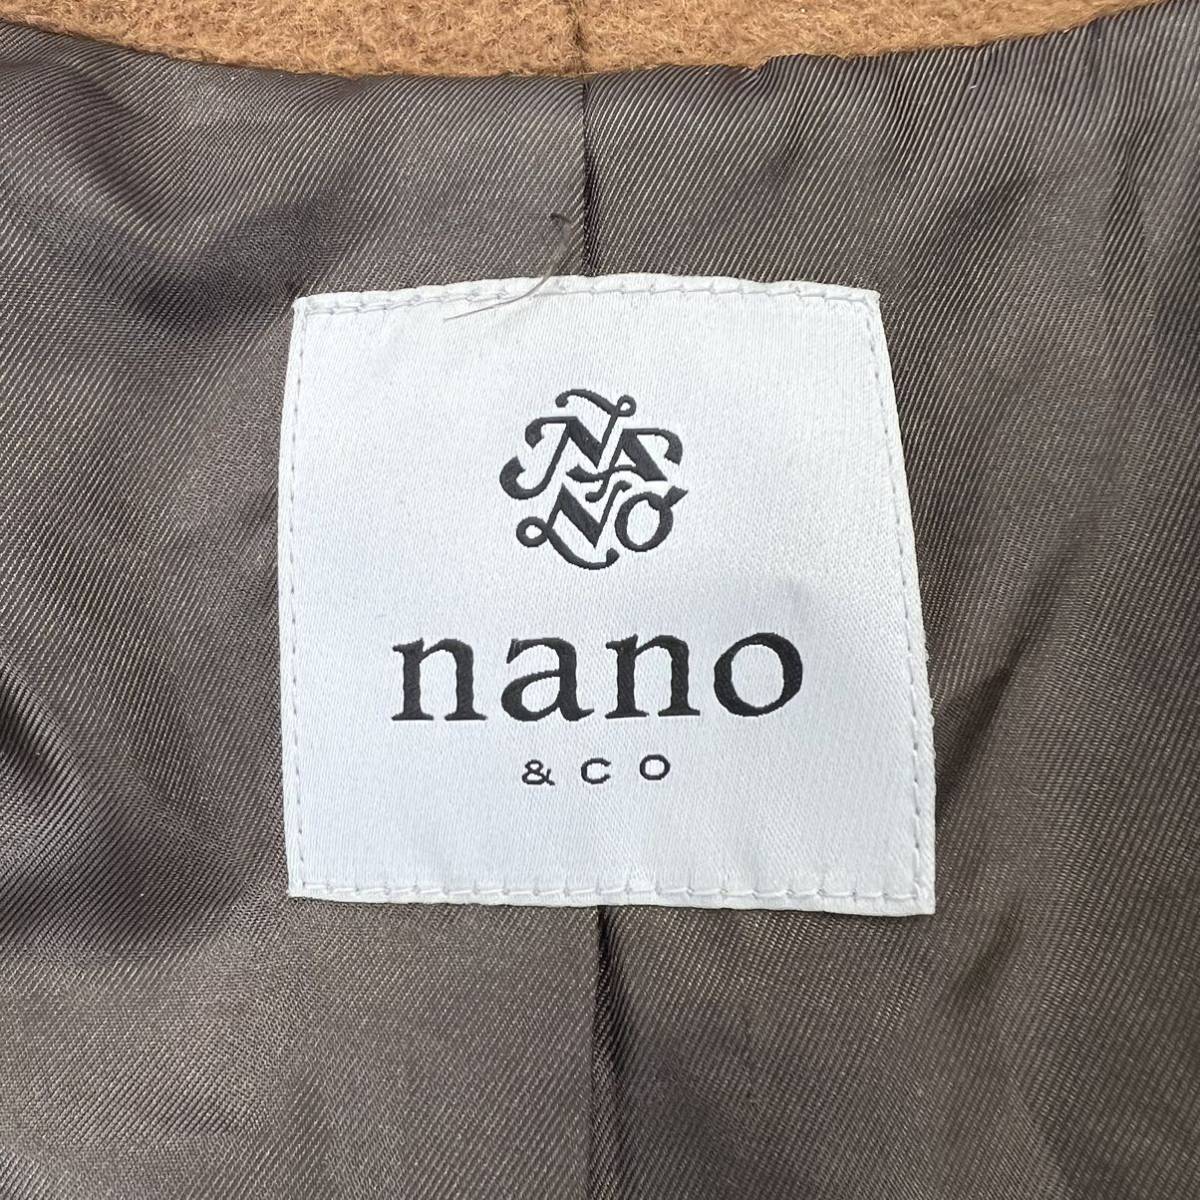 nano universe * изысканный стиль .* Brown Пальто Честерфилд шерсть 36 осень-зима стильный взрослый casual Nano Universe #DH65